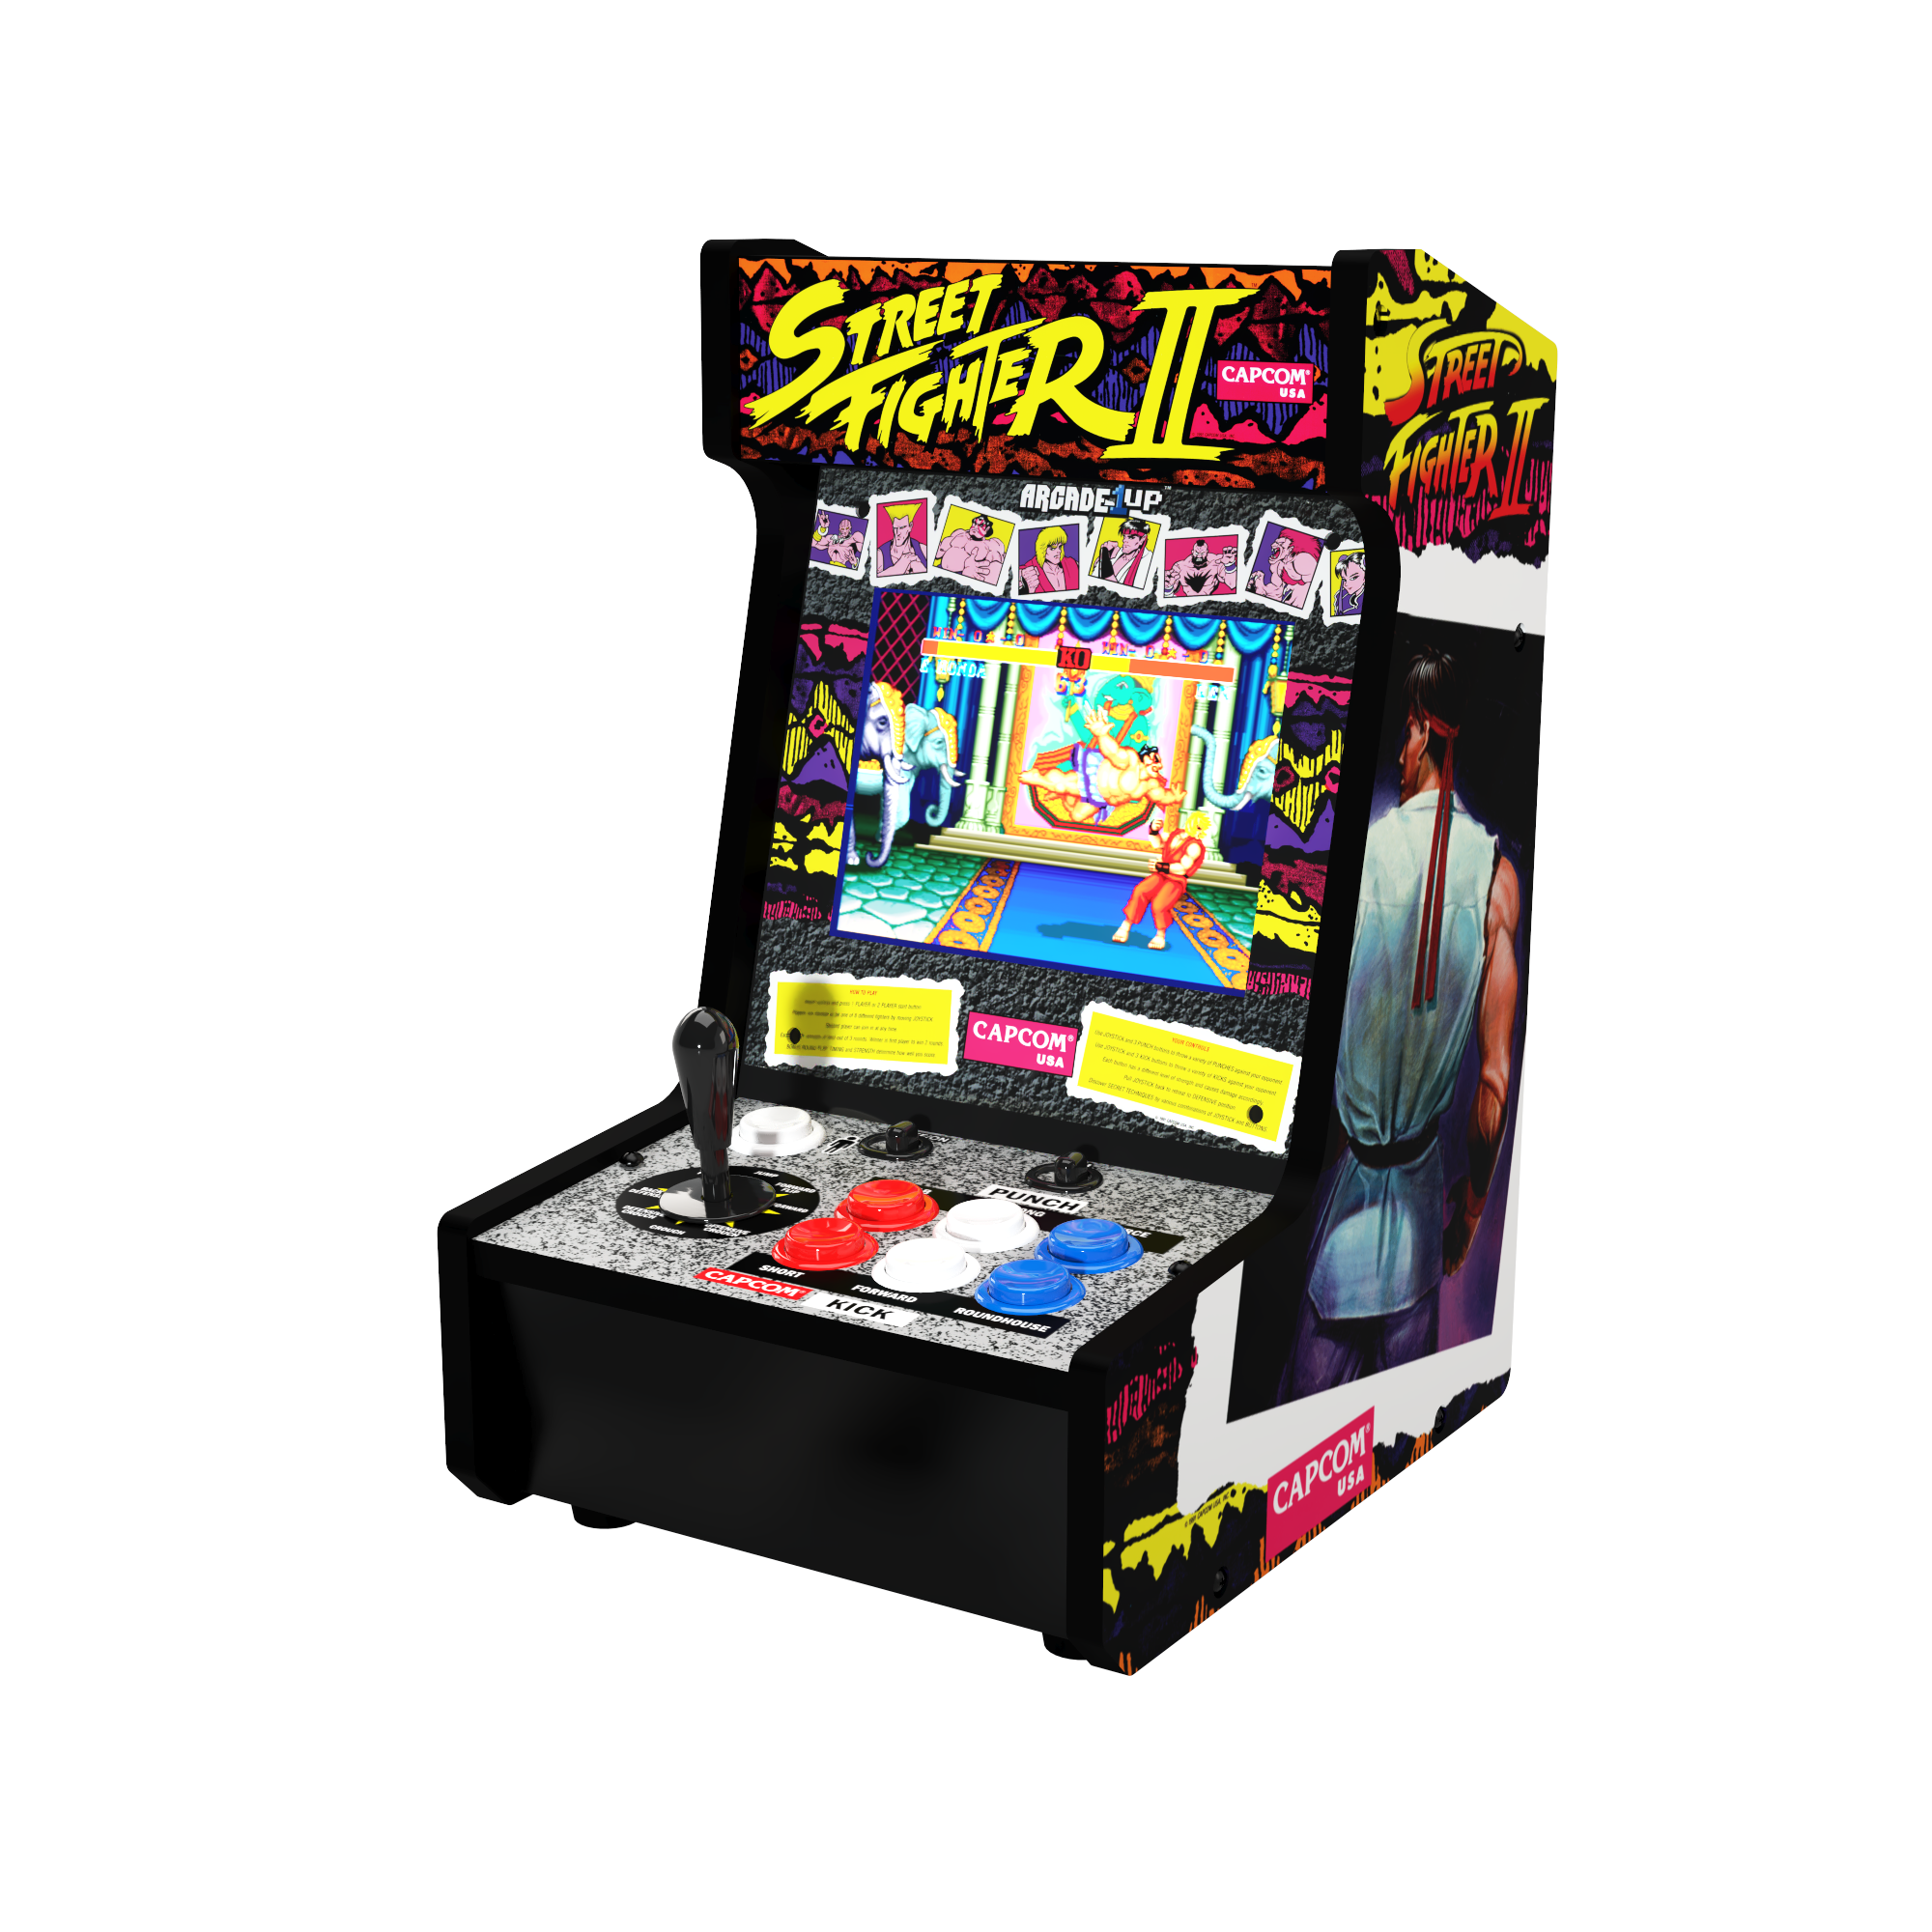 【送料無料格安】Arcade 1UP Street Fighter II 8 in 1 Partycade ゲーム筐体 輸入品 新品送料込 (ストリートファイターII・魔界村・ストライダー飛竜 他) 筐体、コントロールパネル